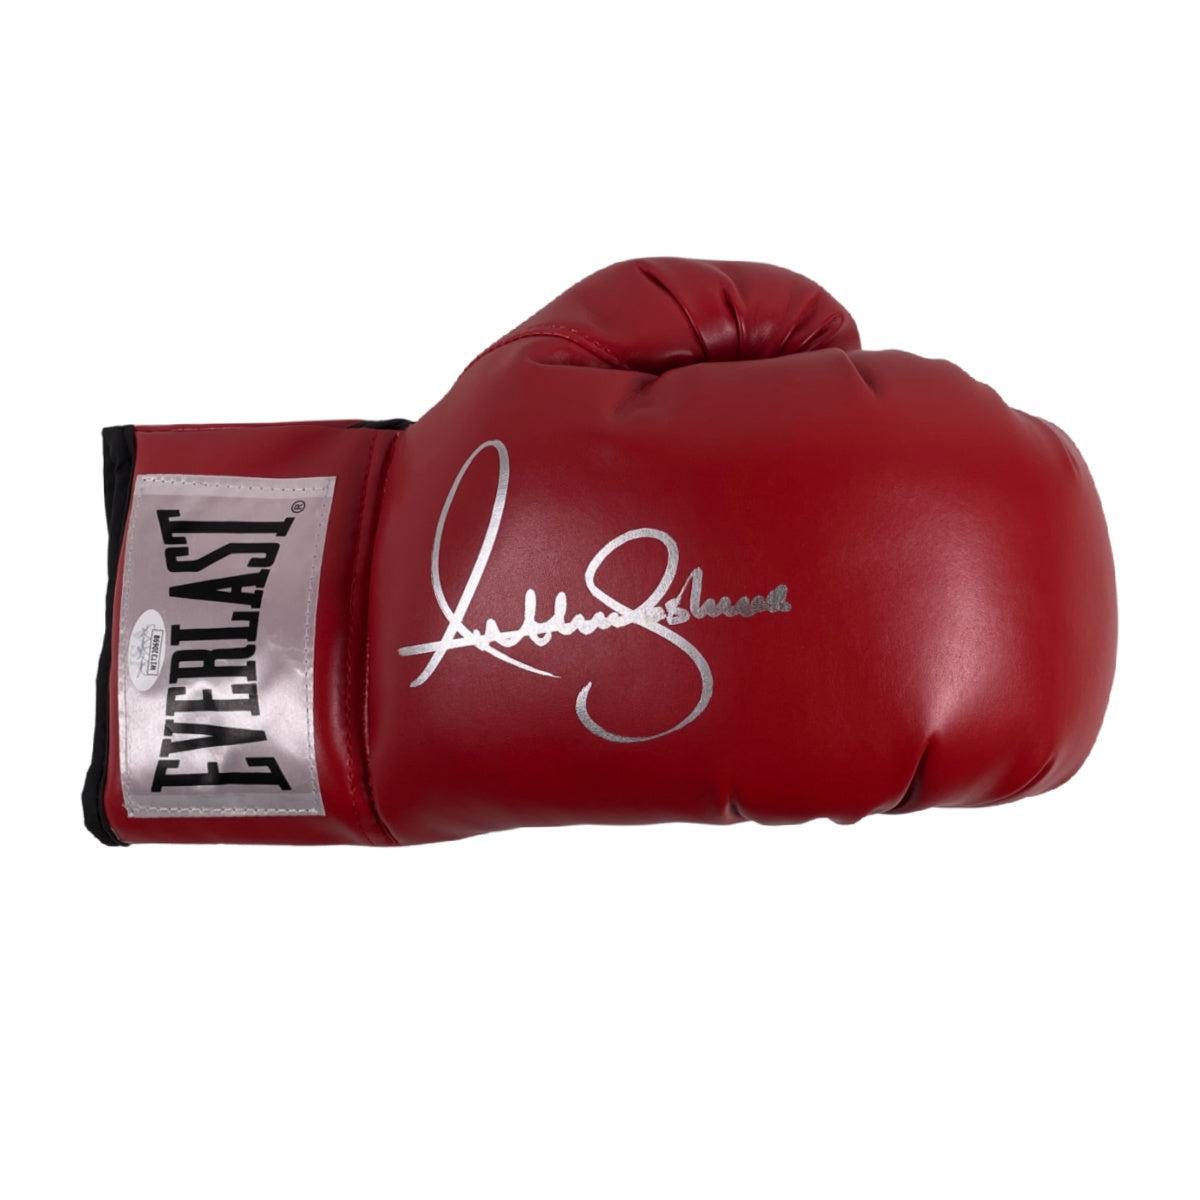 Anthony Joshua Signed Boxing Glove Signed JSA COA Red